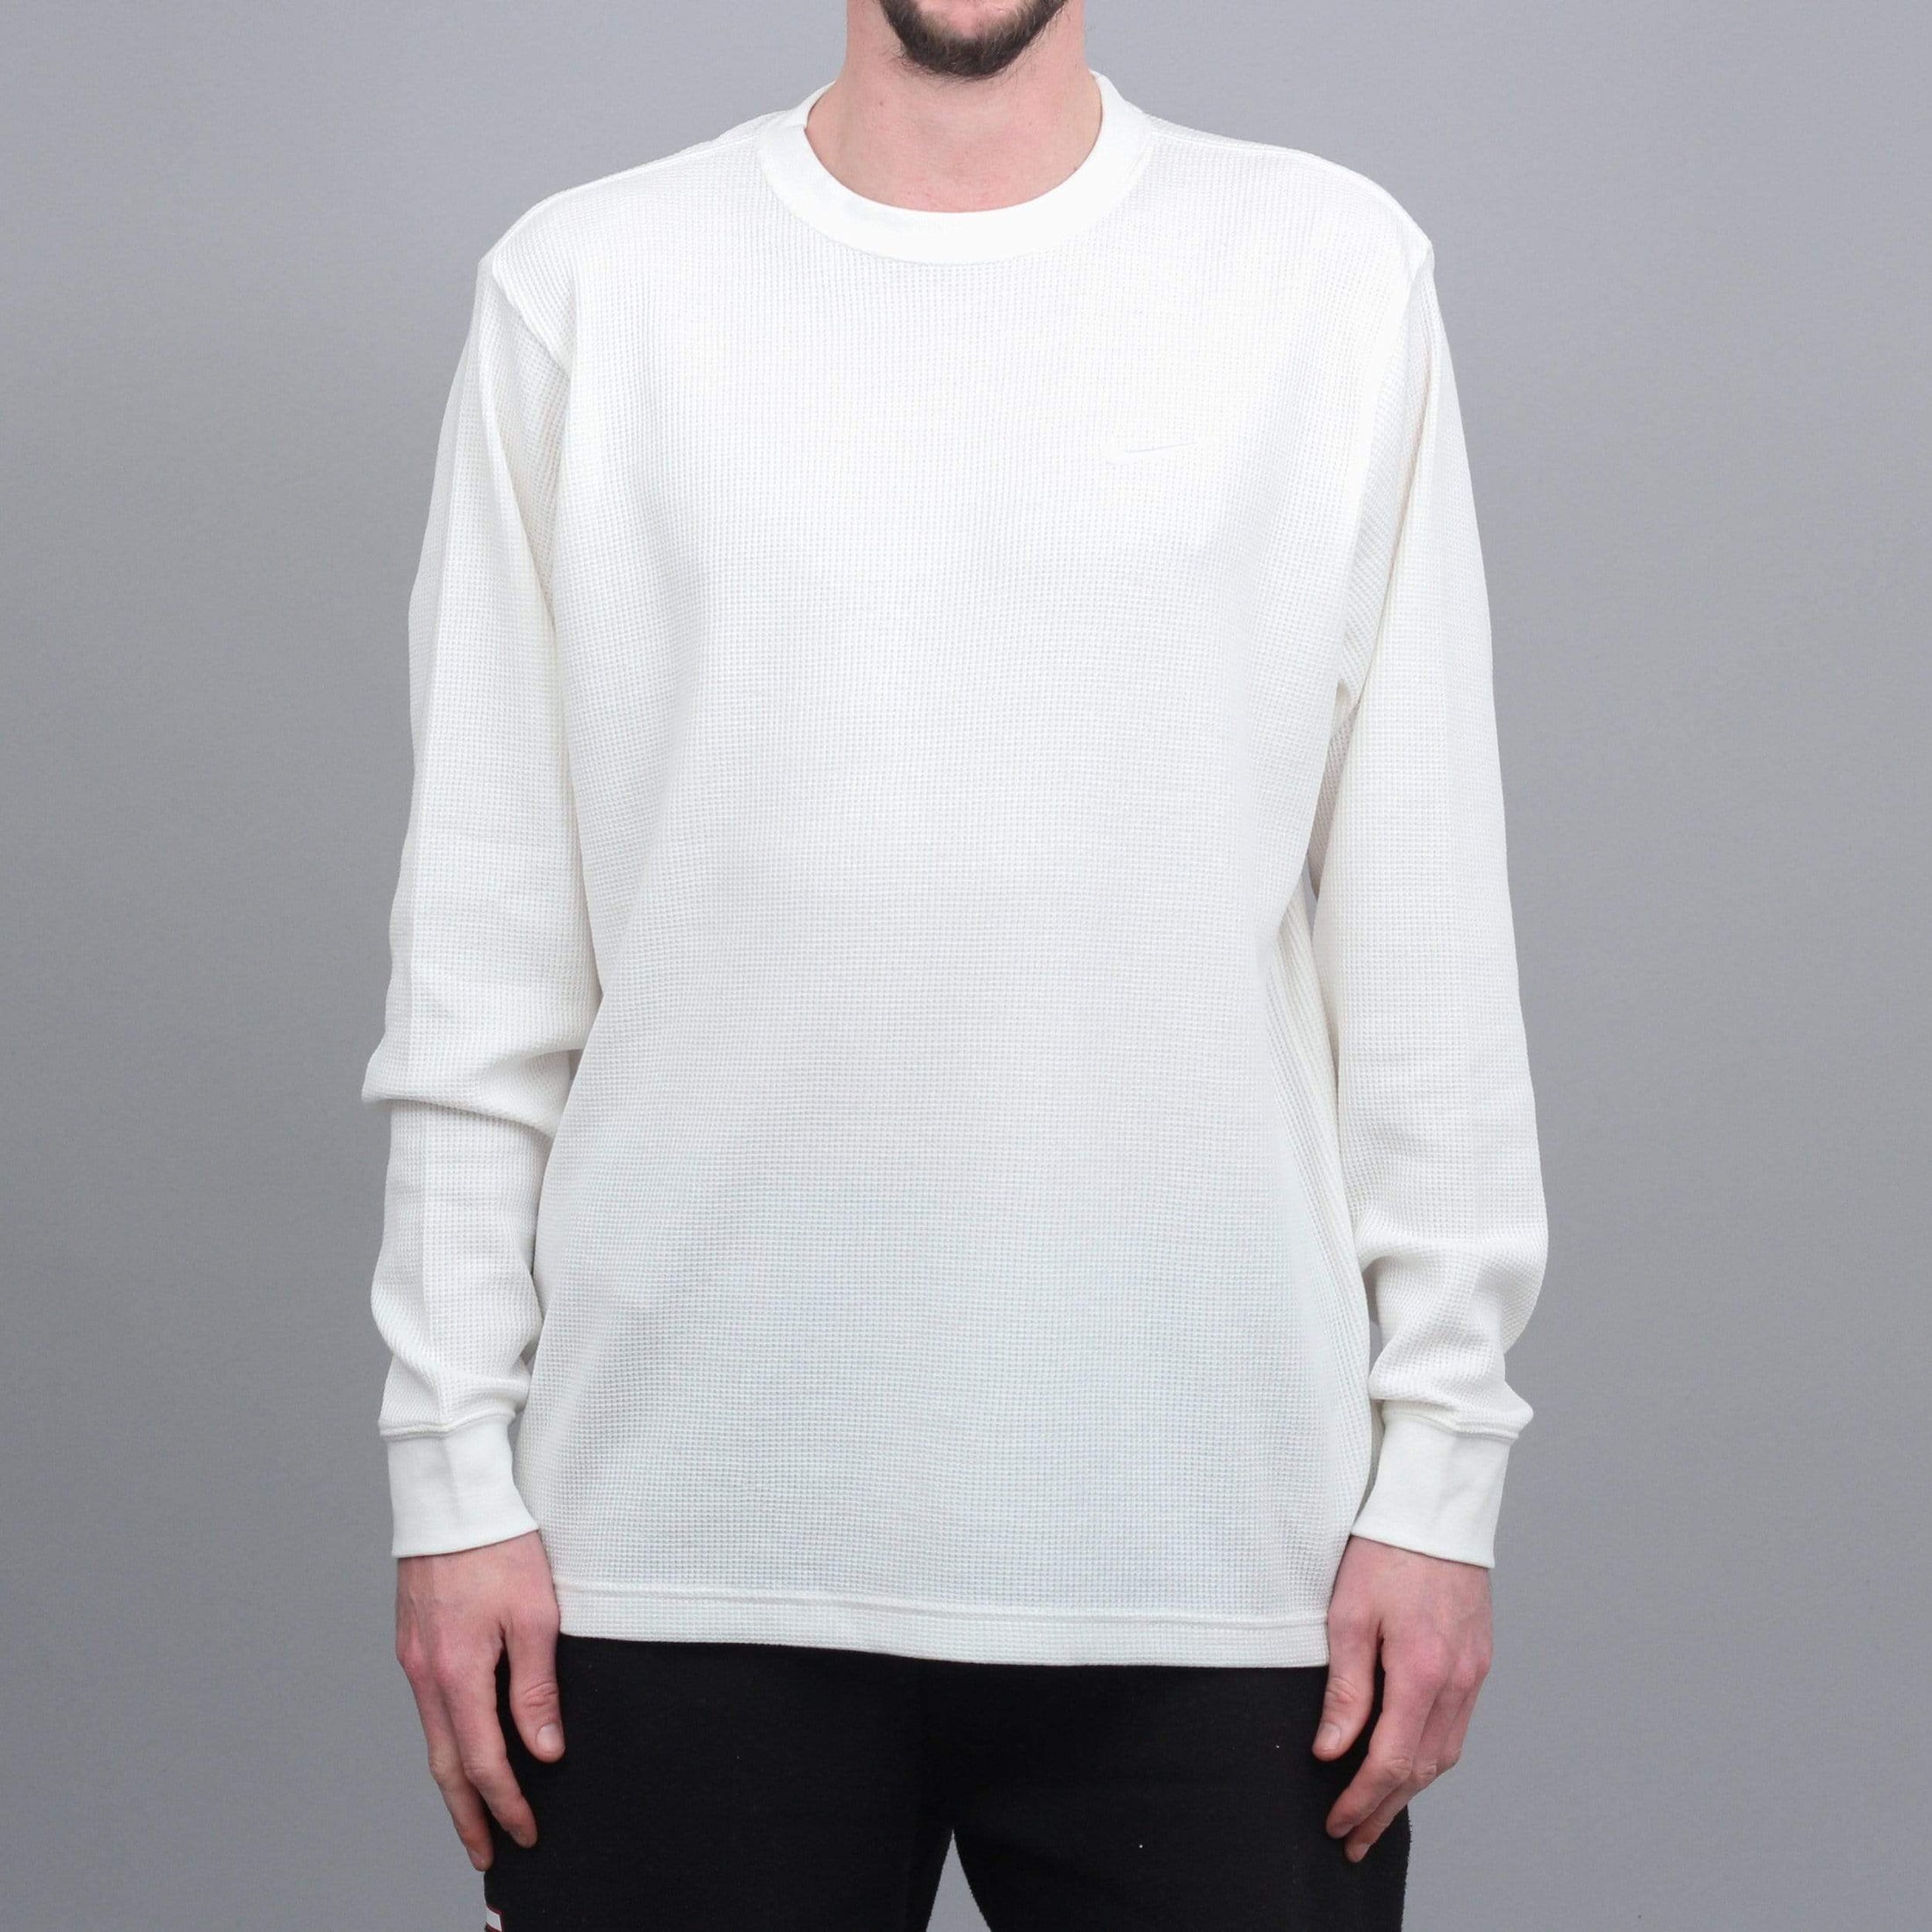 Nike SB Oski Longsleeve T-Shirt Sail / White